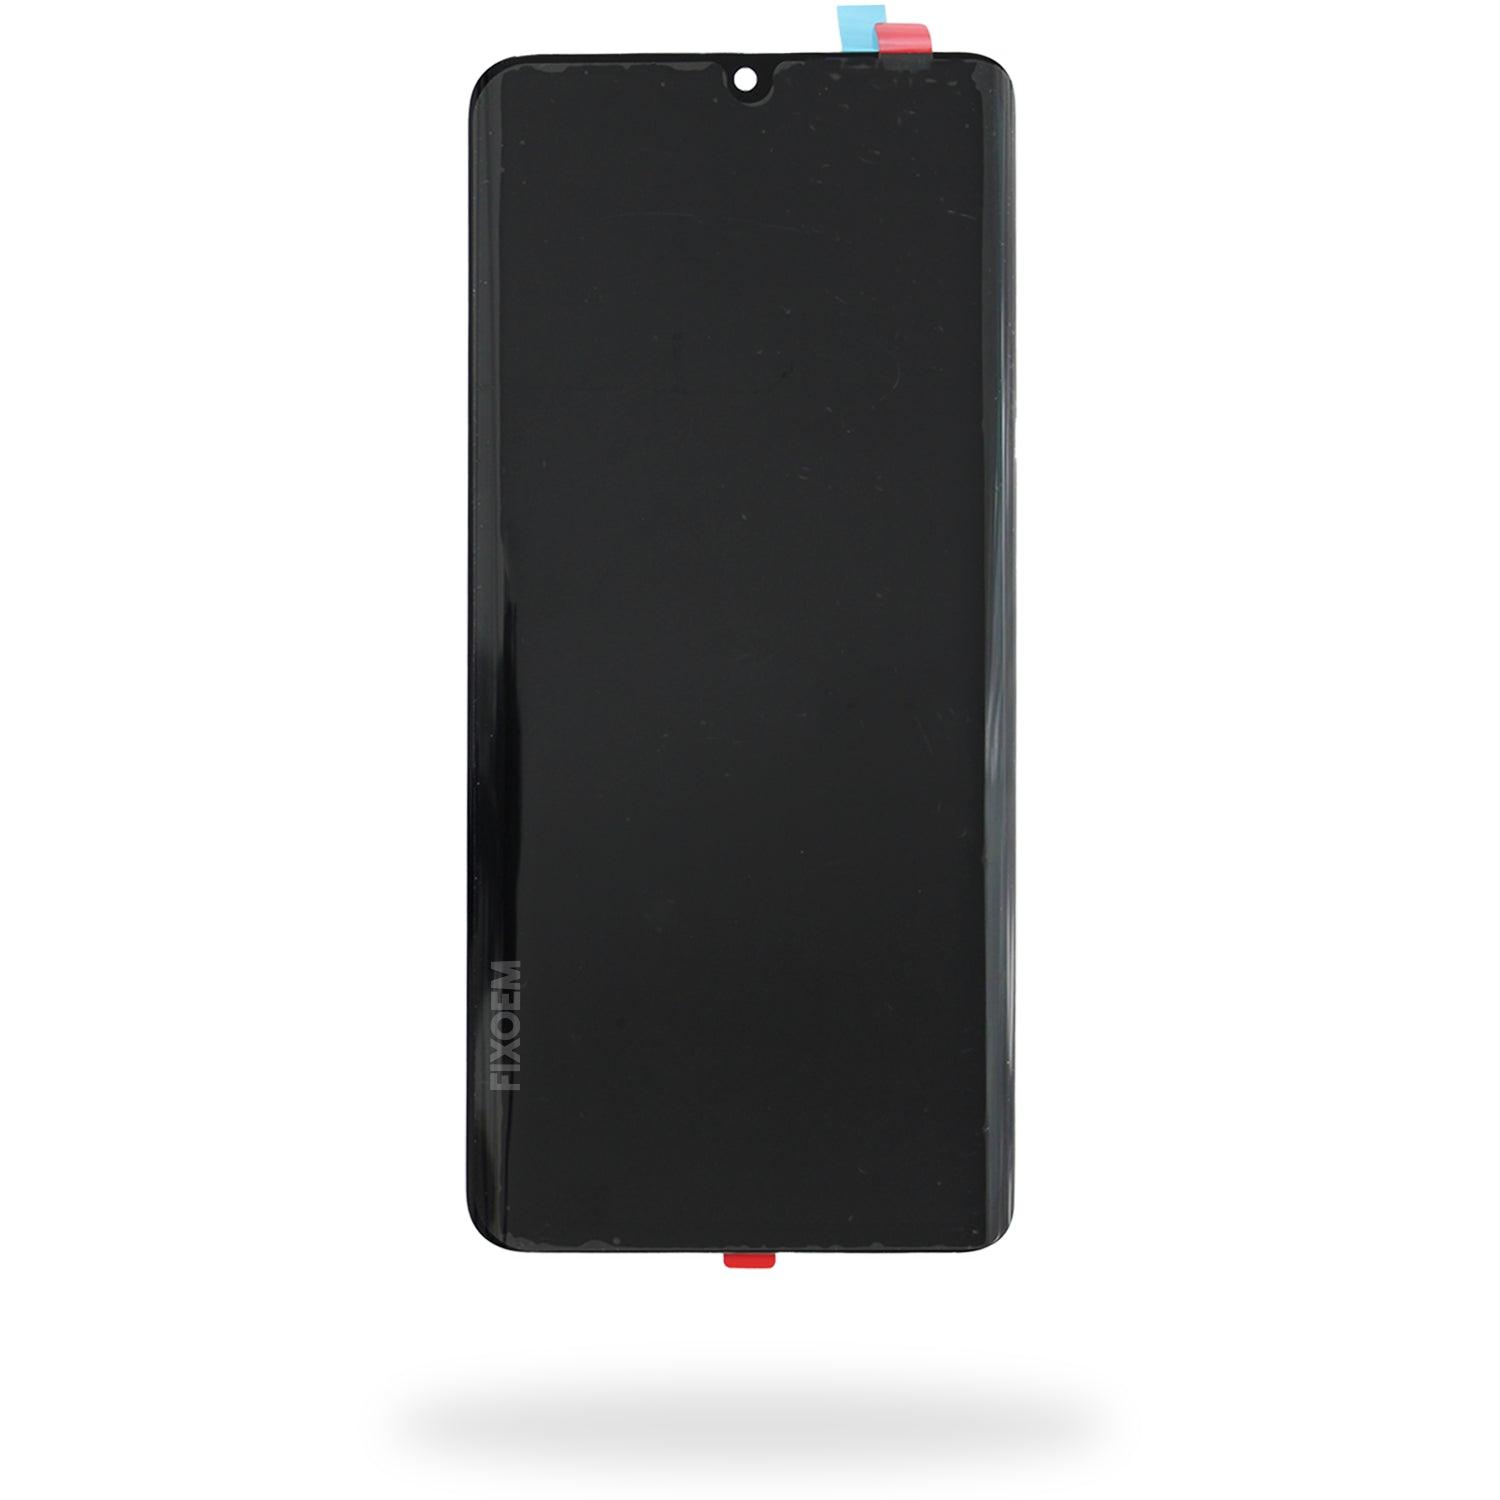 Display Huawei P30 Pro Vog-L04 IPS a solo $ 1110.00 Refaccion y puestos celulares, refurbish y microelectronica.- FixOEM